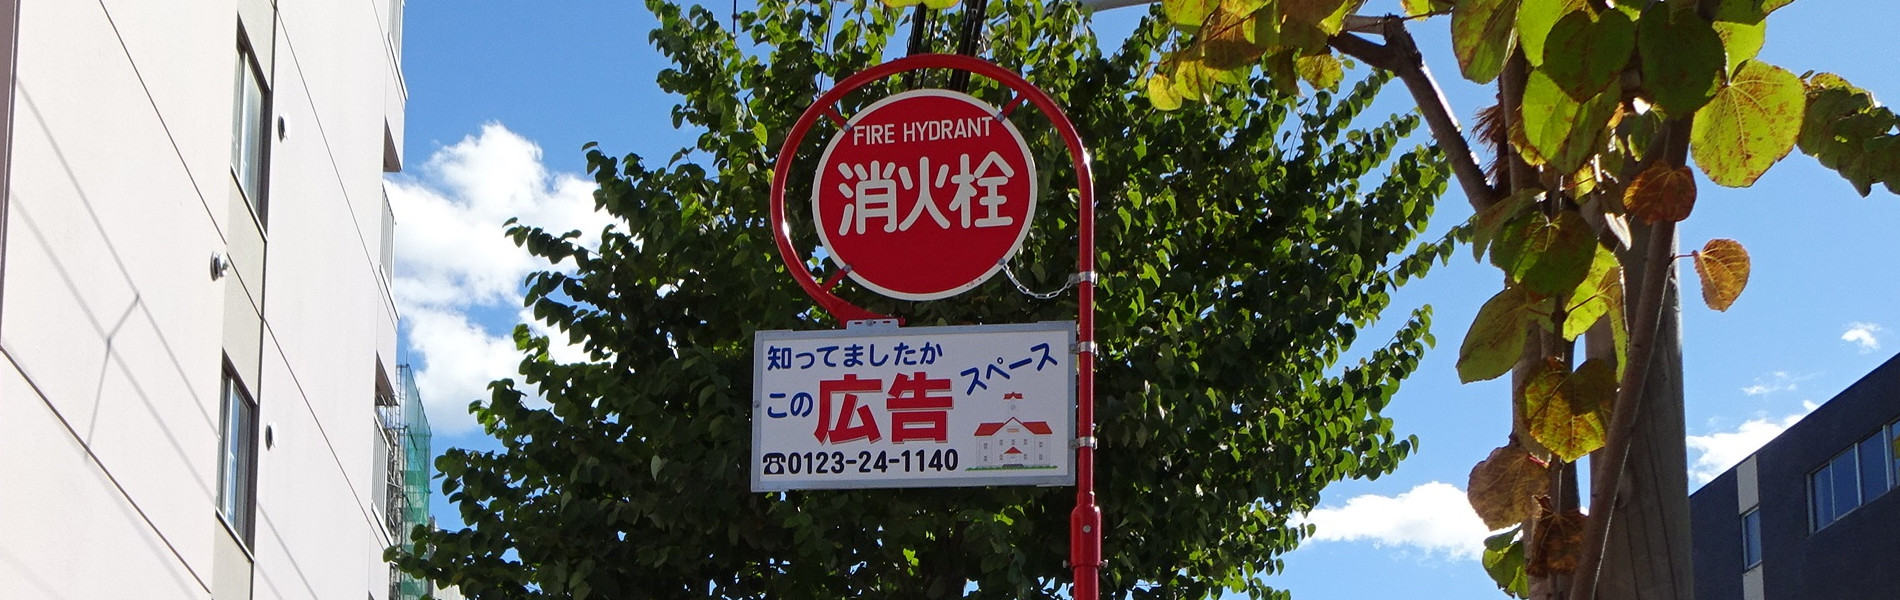 屋外広告看板 札幌消火栓マーク株式会社